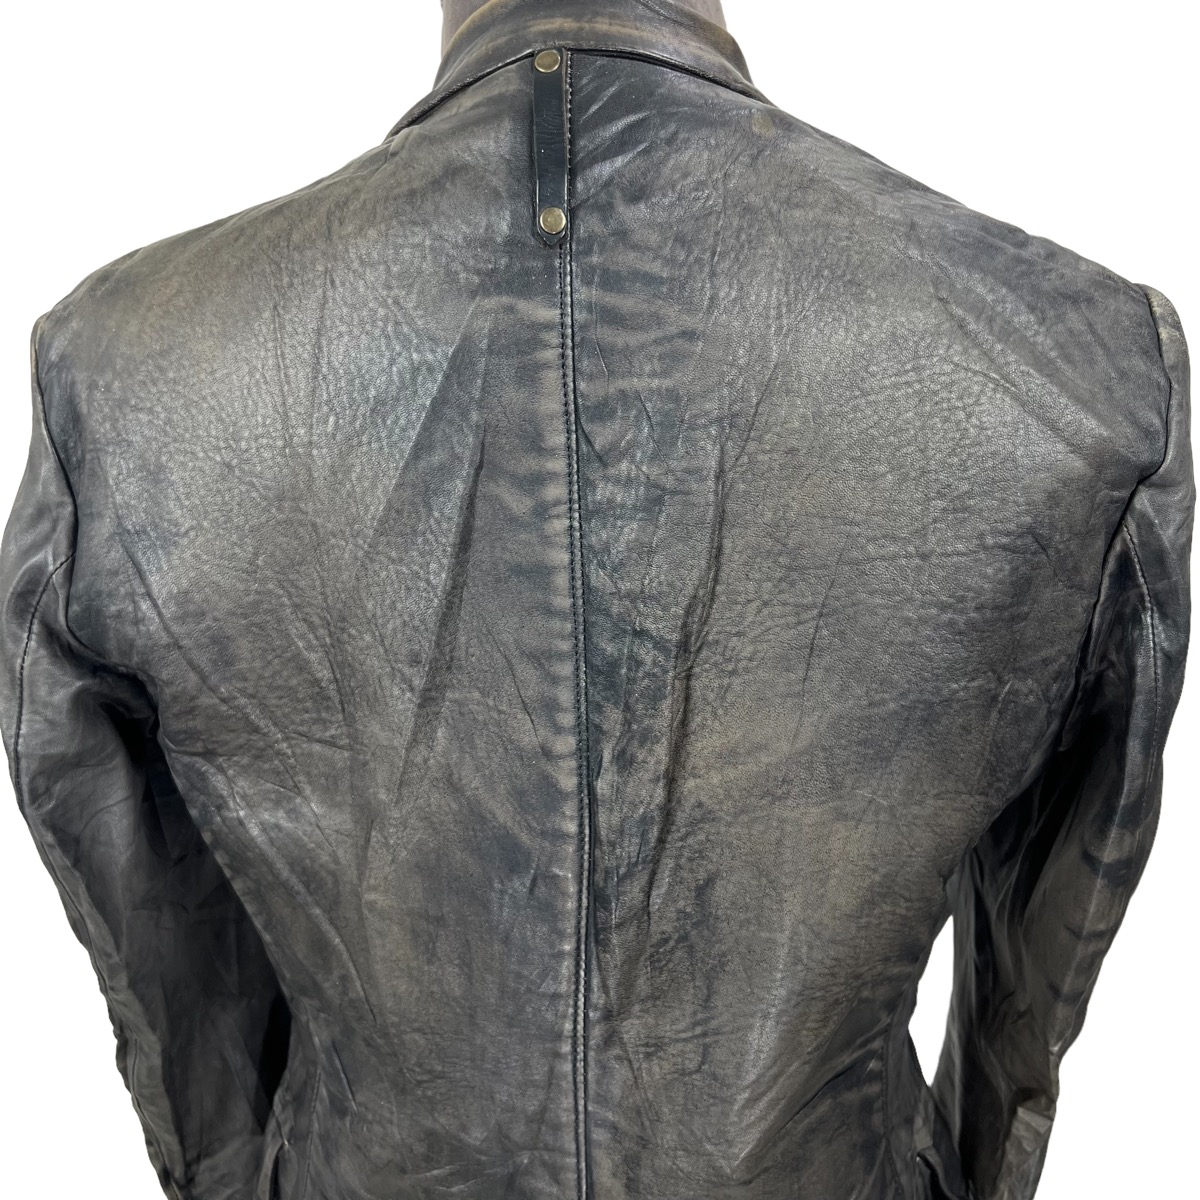 Lamb Leather Jacket - 6